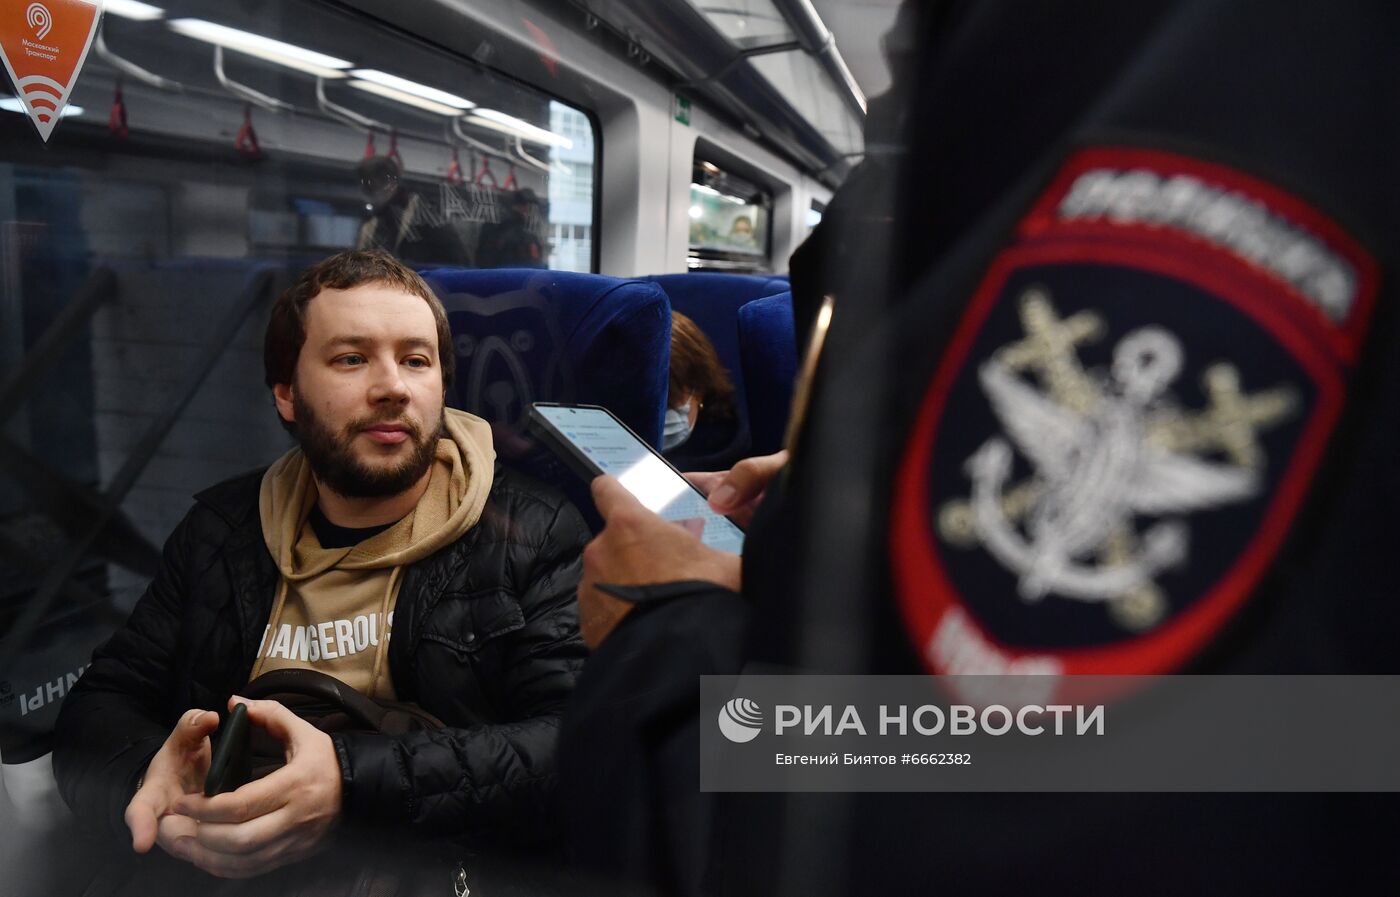 В московском транспорте усилили контроль за соблюдением масочного режима